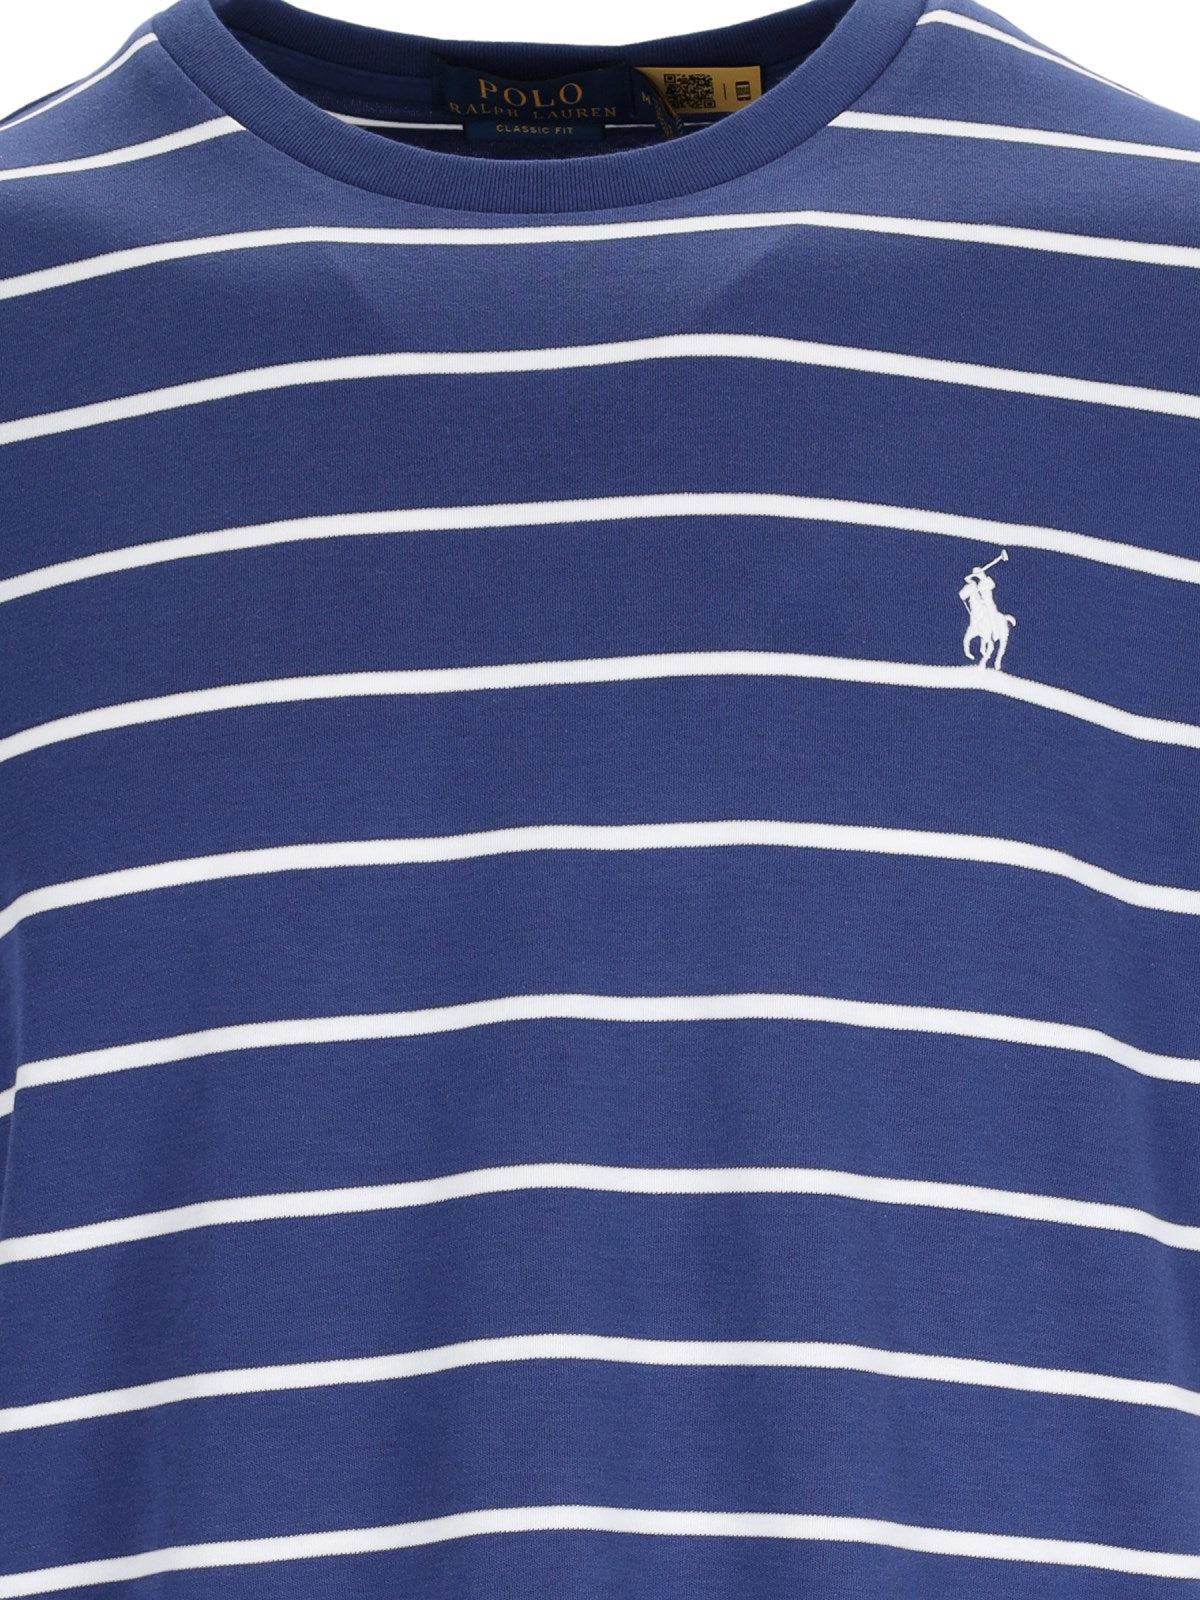 Polo Ralph Lauren T-Shirt logo-t-shirt-Polo Ralph Lauren-T-shirt logo Polo Ralph Lauren, in cotone blu, design a righe dettagli bianchi, girocollo, maniche corte, ricamo logo bianco petto, orlo dritto.-Dresso